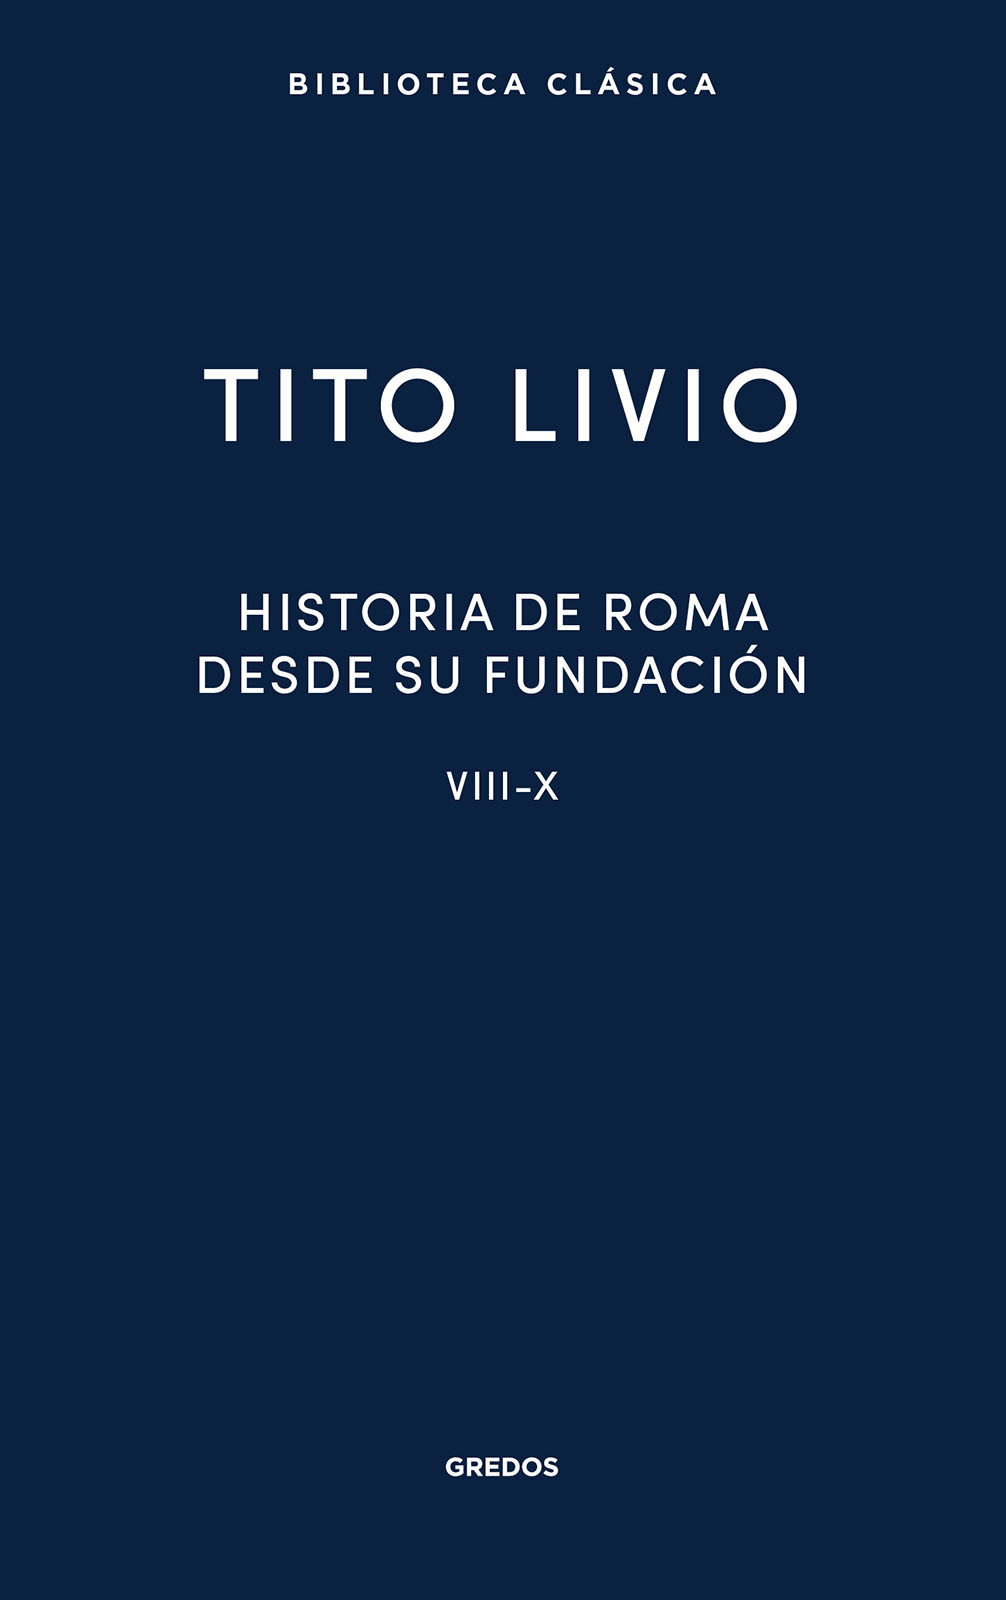 Historia de Roma desde su fundación